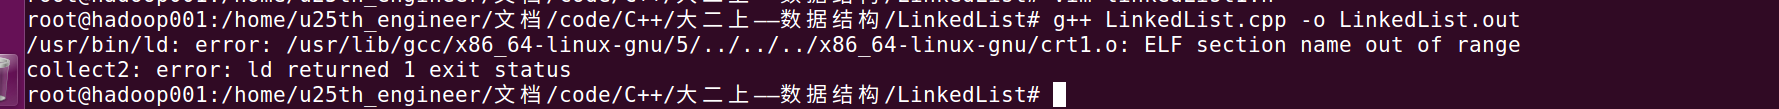 在Ubuntu 16.04 LTS上用g++和gcc编译C/C++代码错误提示“.../x86_64-linux-gnu/crt1